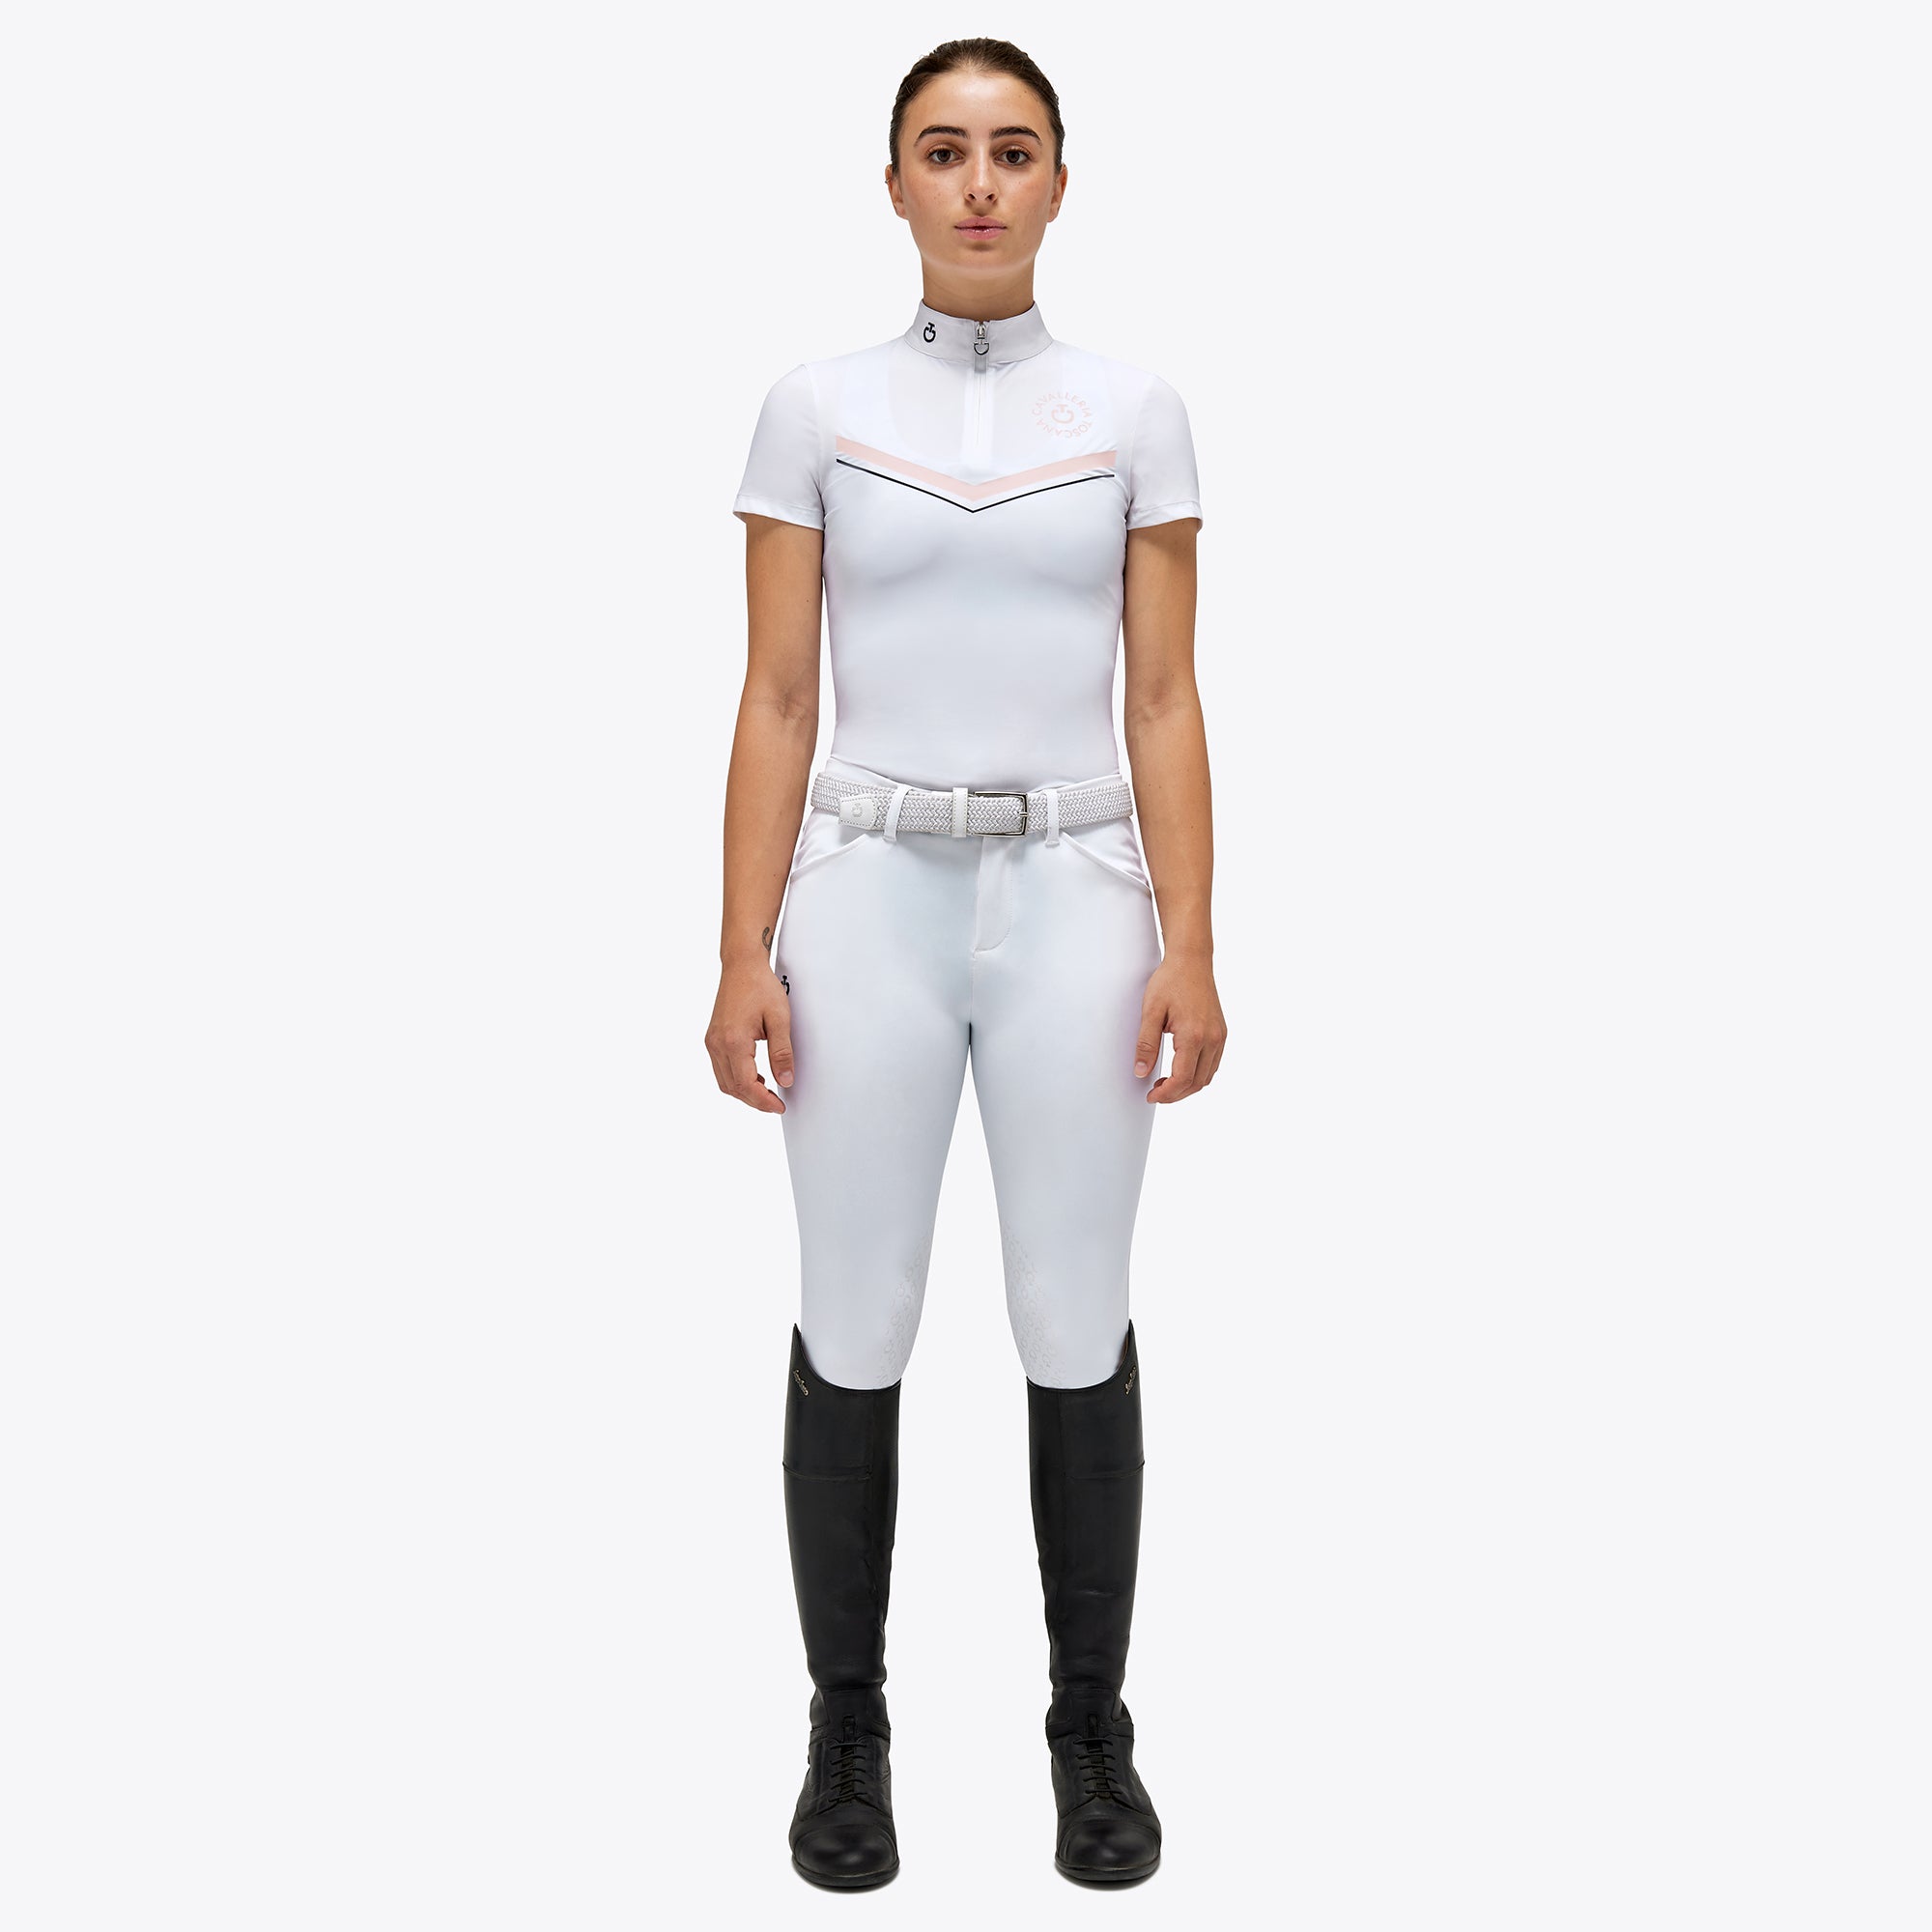 Girls CT Orbit Print Show Shirt - White